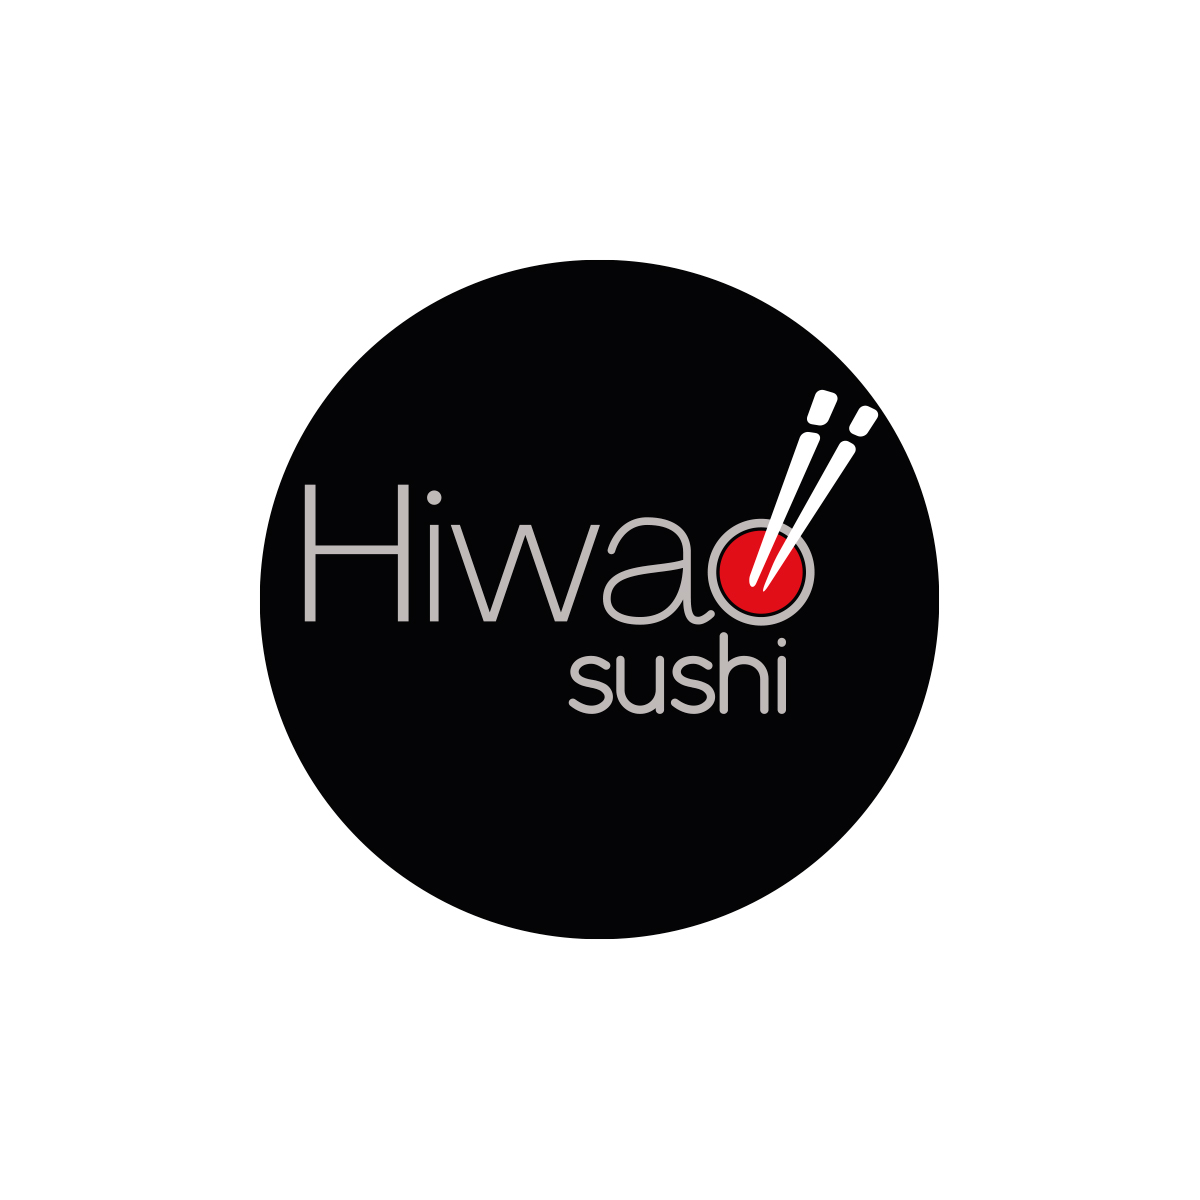 HIWAO SUSHI